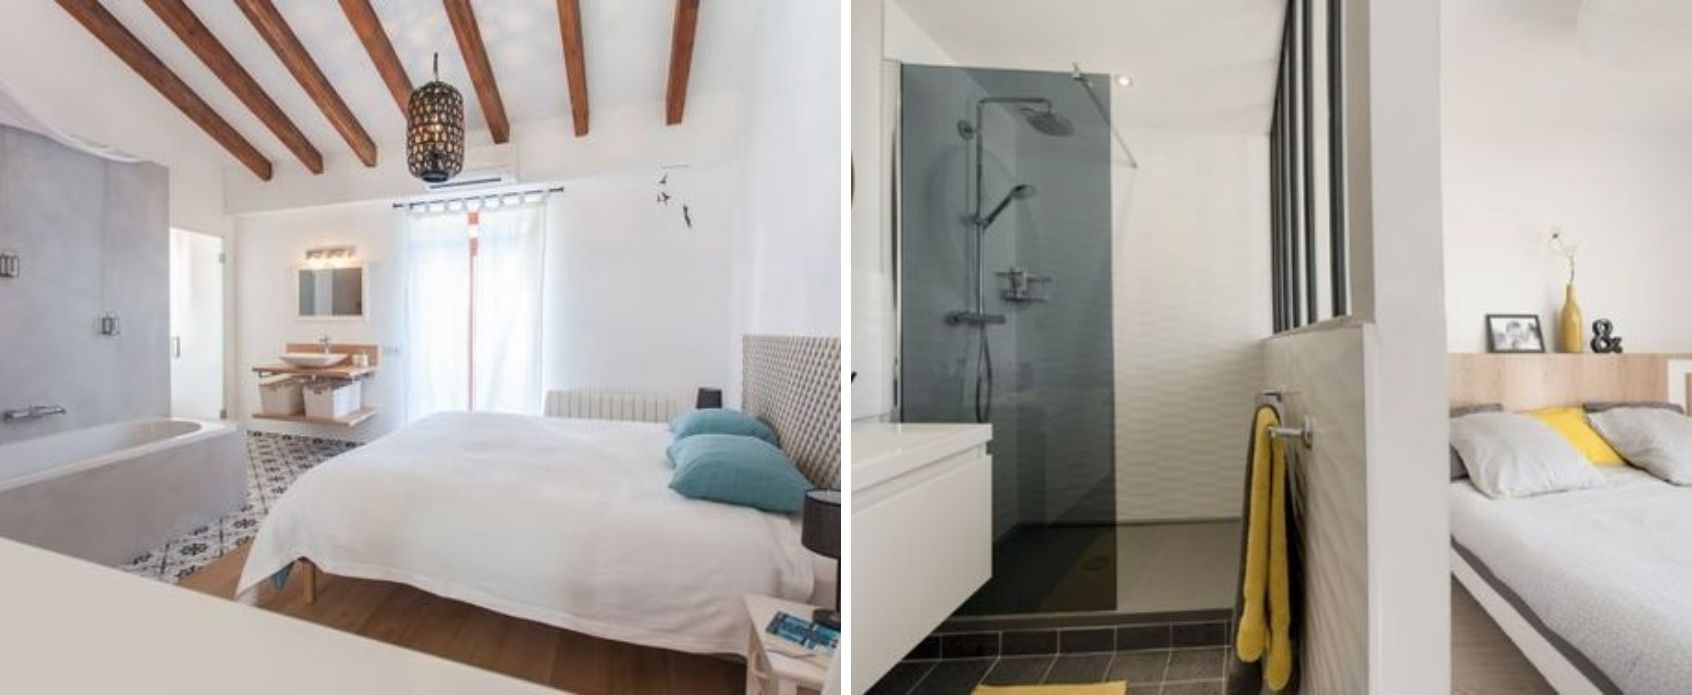 consejos_baño_integrado_dormitorio_diseño_interiorismo_decoración_trucos-01